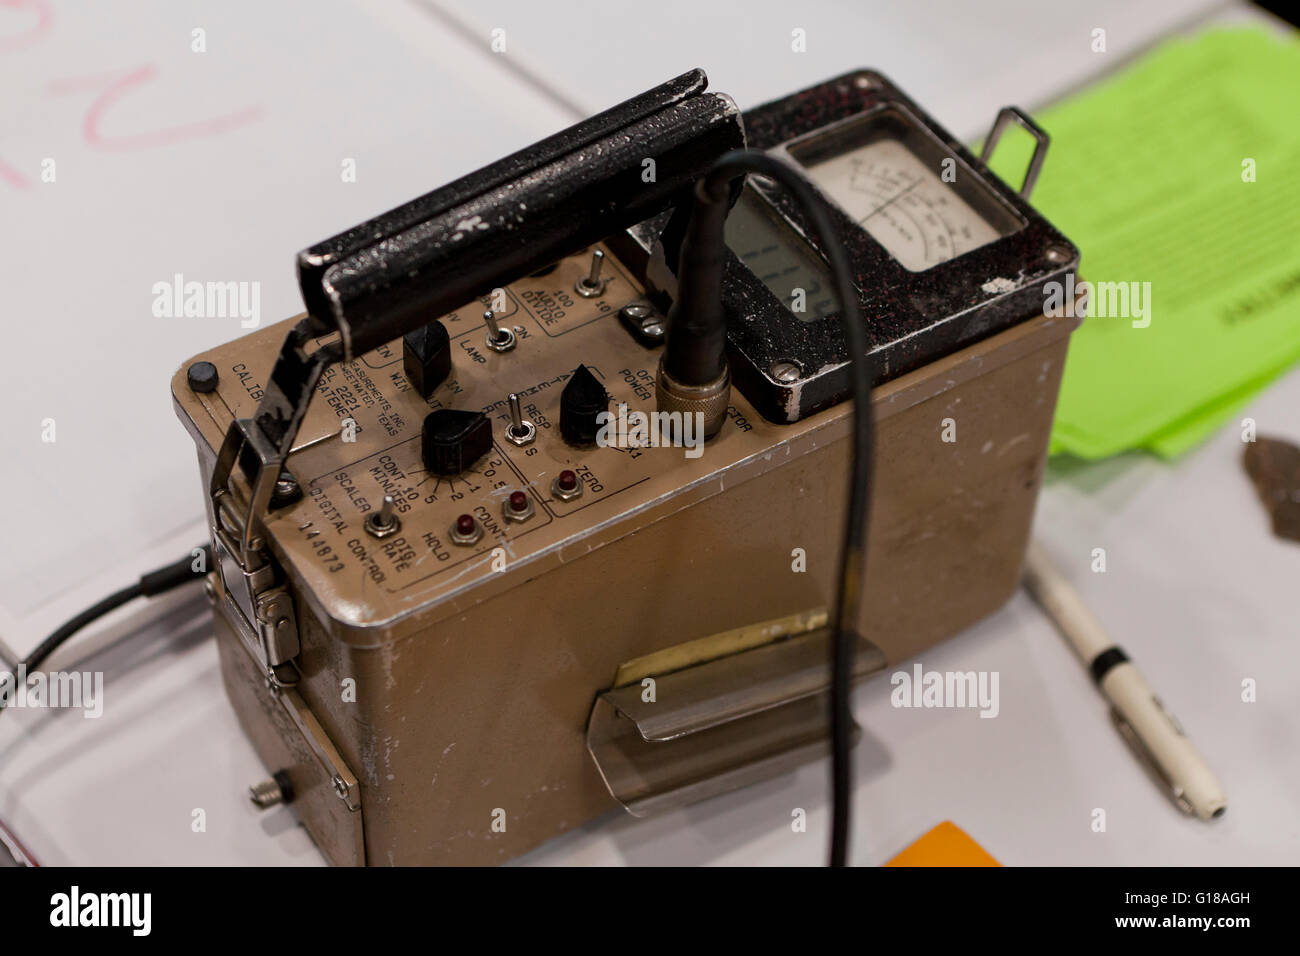 Vintage modello Ludium 2221 Scaler radiazione rateometro (contatore Geiger) - USA Foto Stock